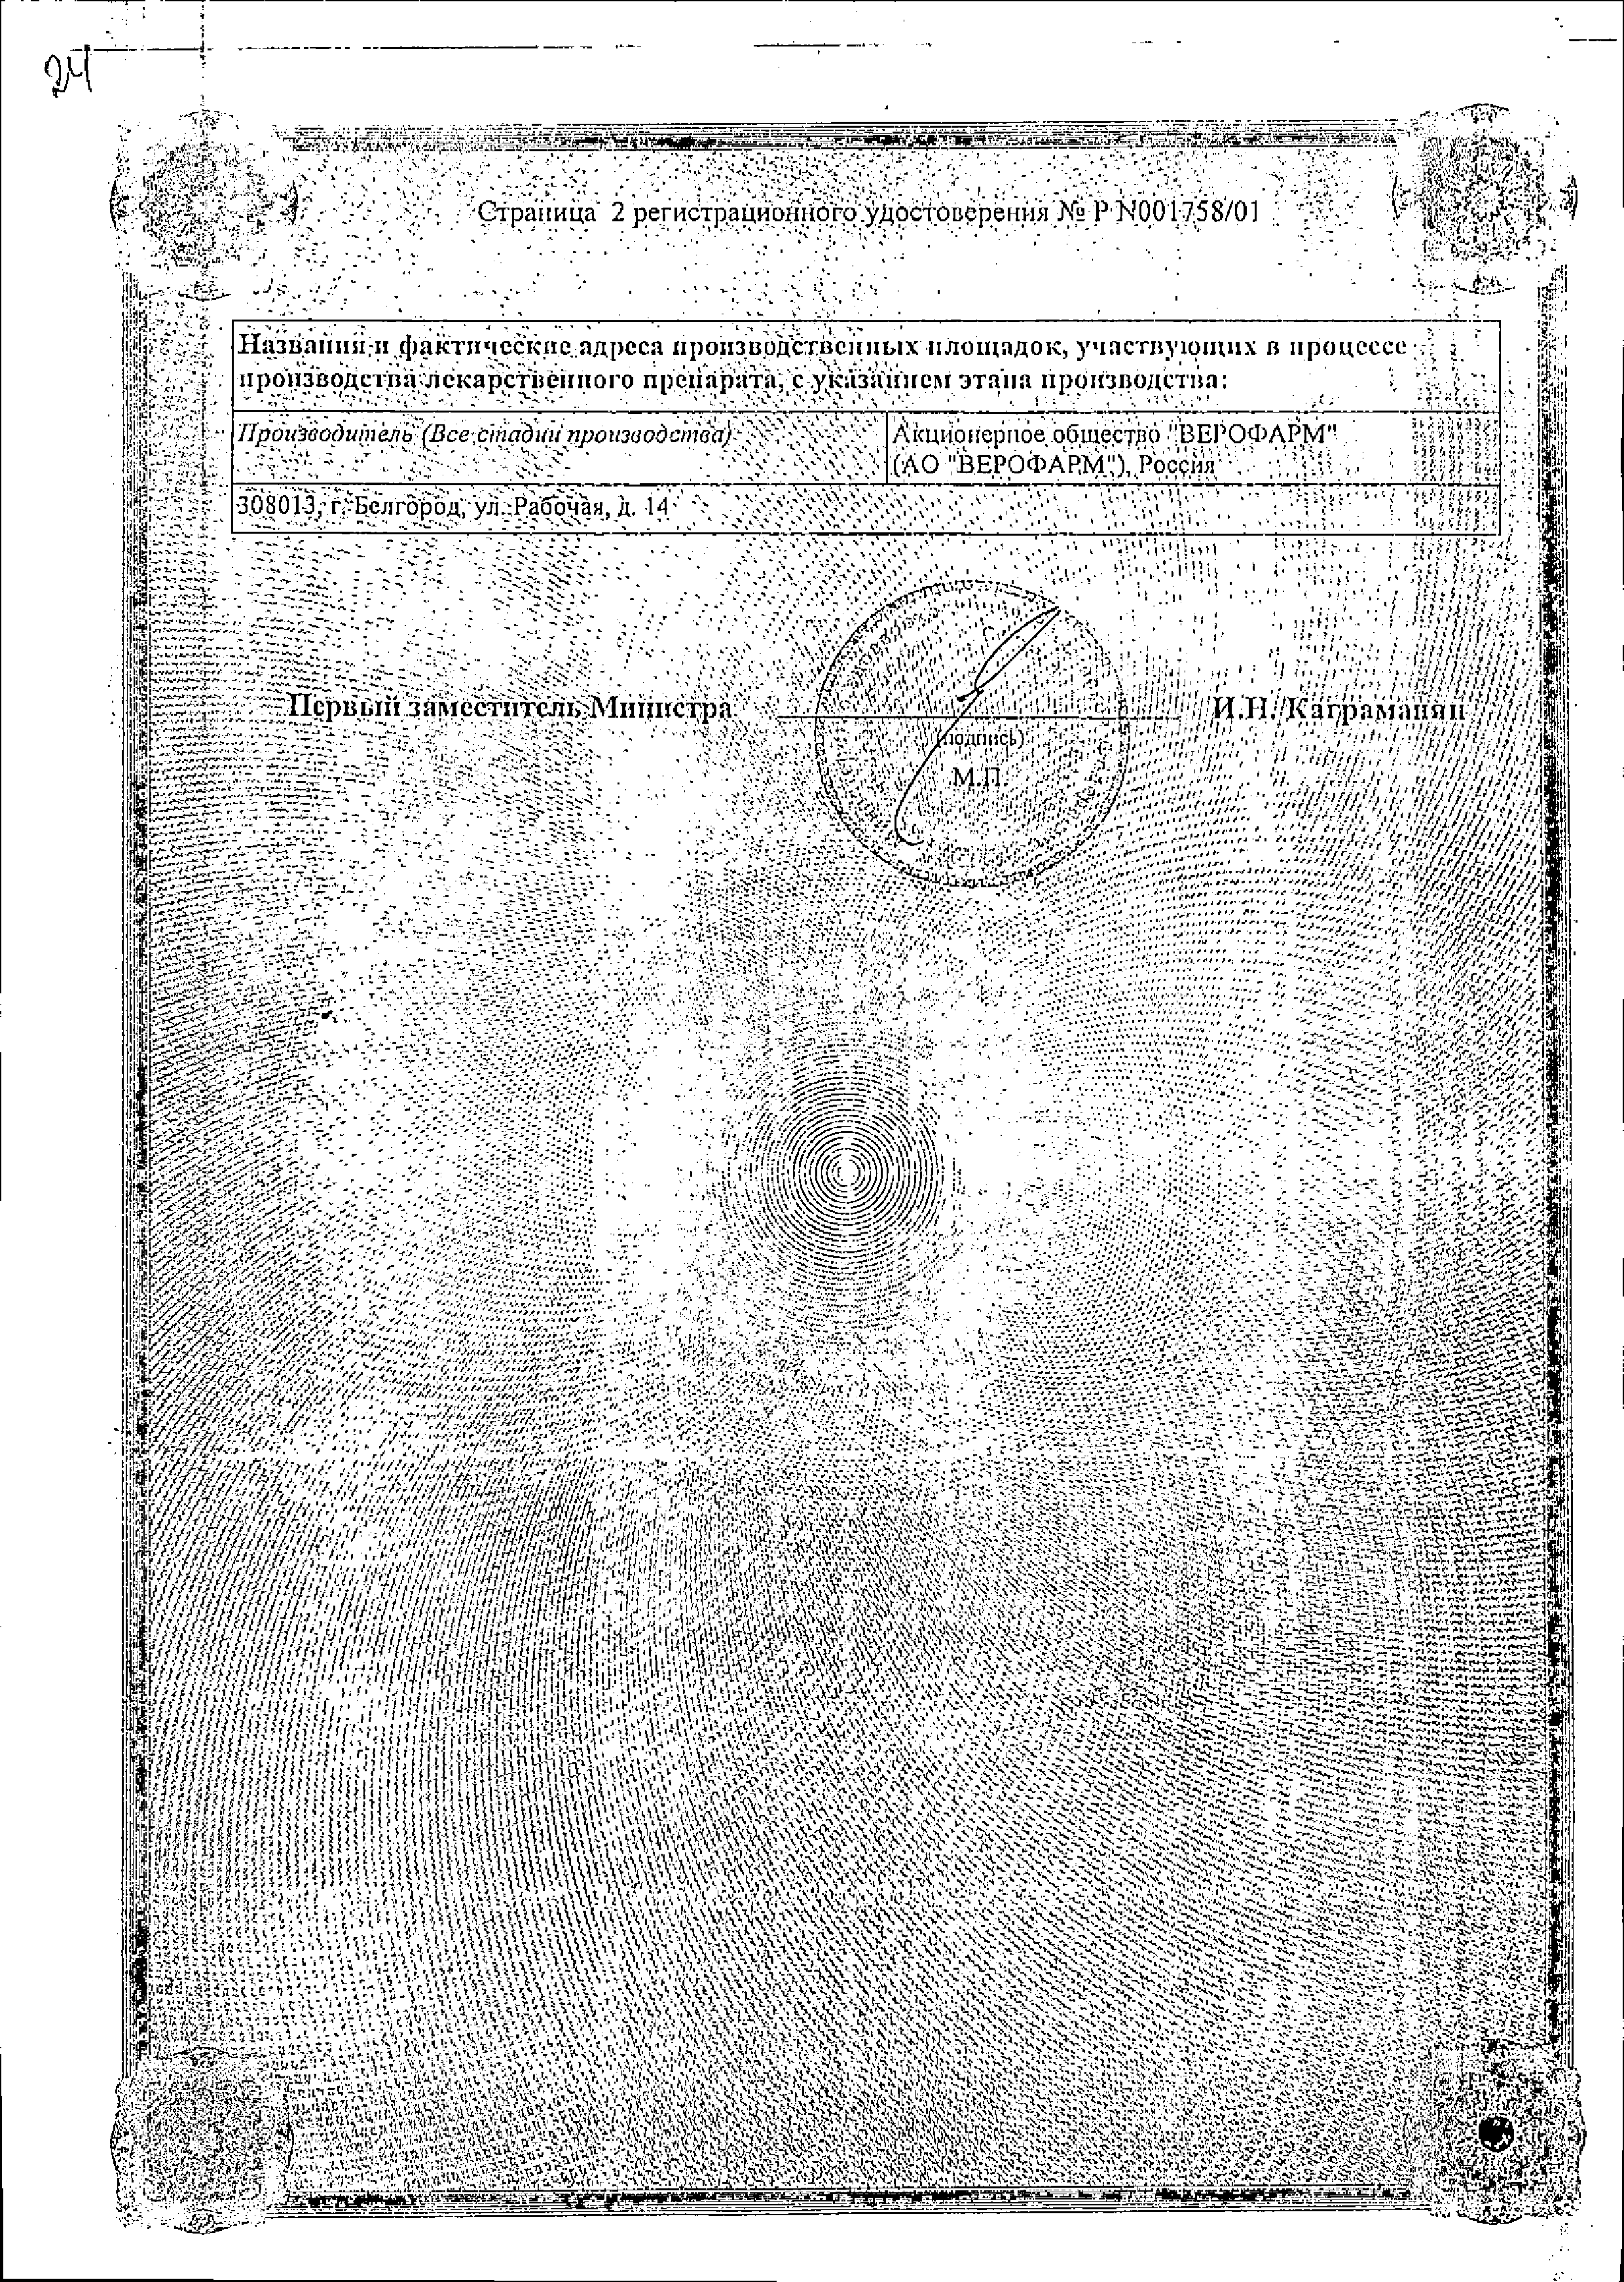 Амигренин сертификат